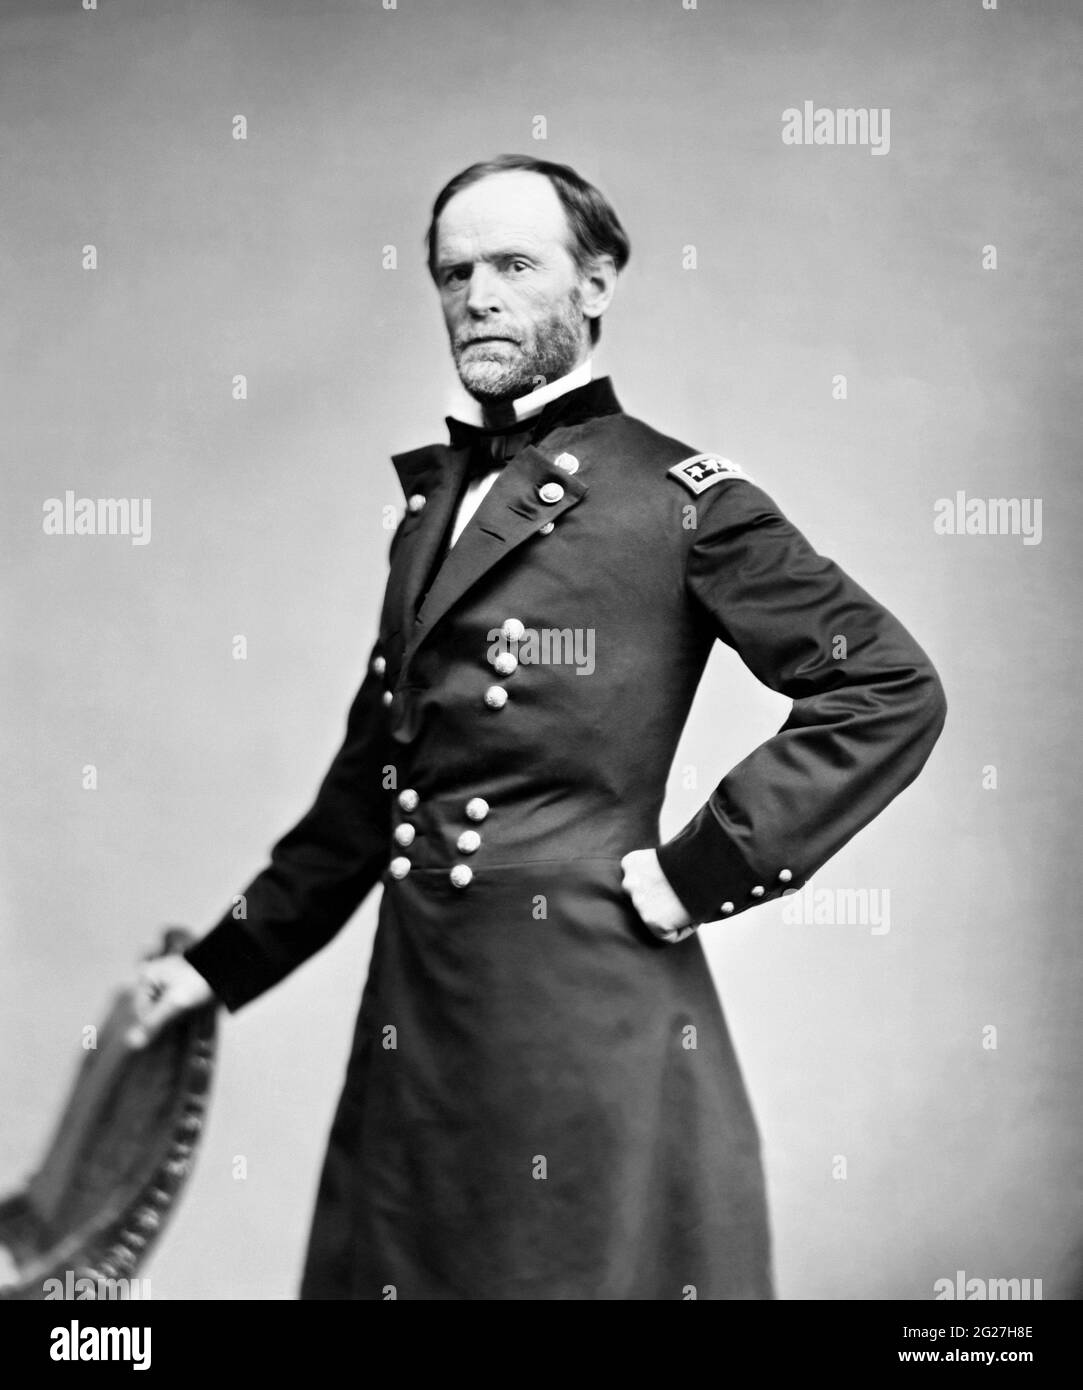 Retrato del General William Tecumseh Sherman, soldado americano del Ejército de la Unión. Foto de stock